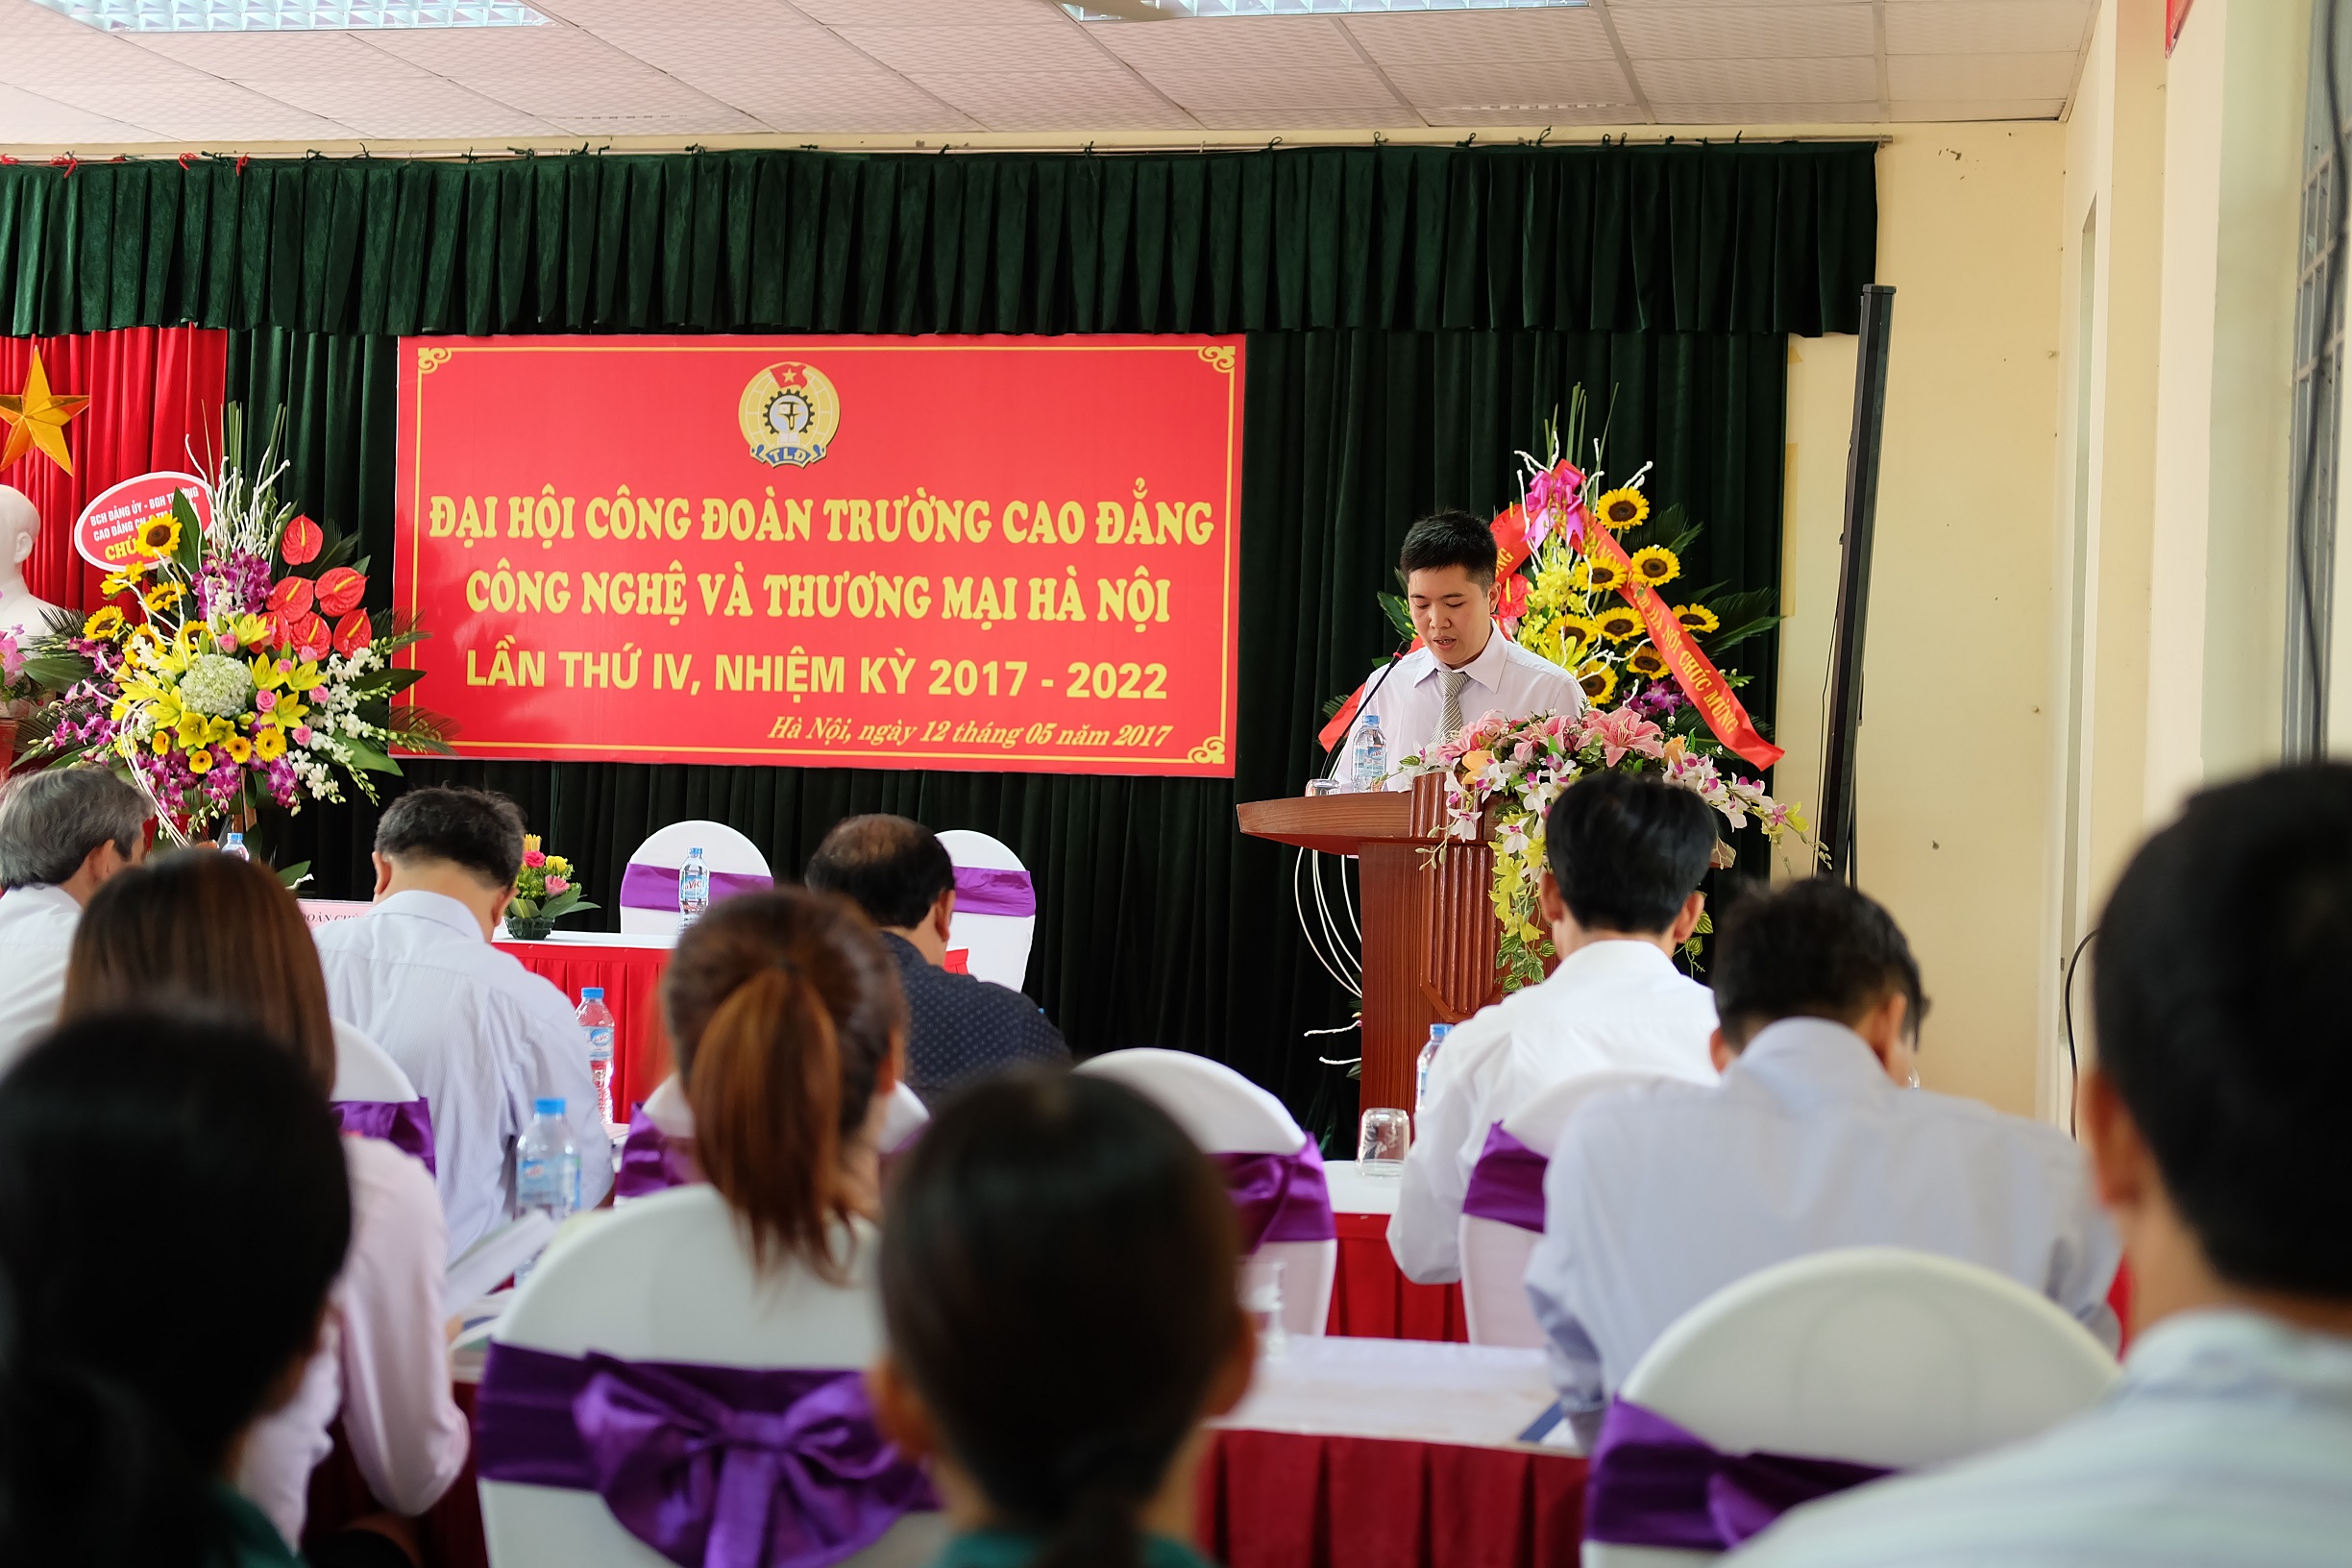 Đồng chí Nguyễn Văn Kết - Phó chủ tịch công đoàn trường CĐ công nghệ và thương mại Hà Nội khai mạc đại hội